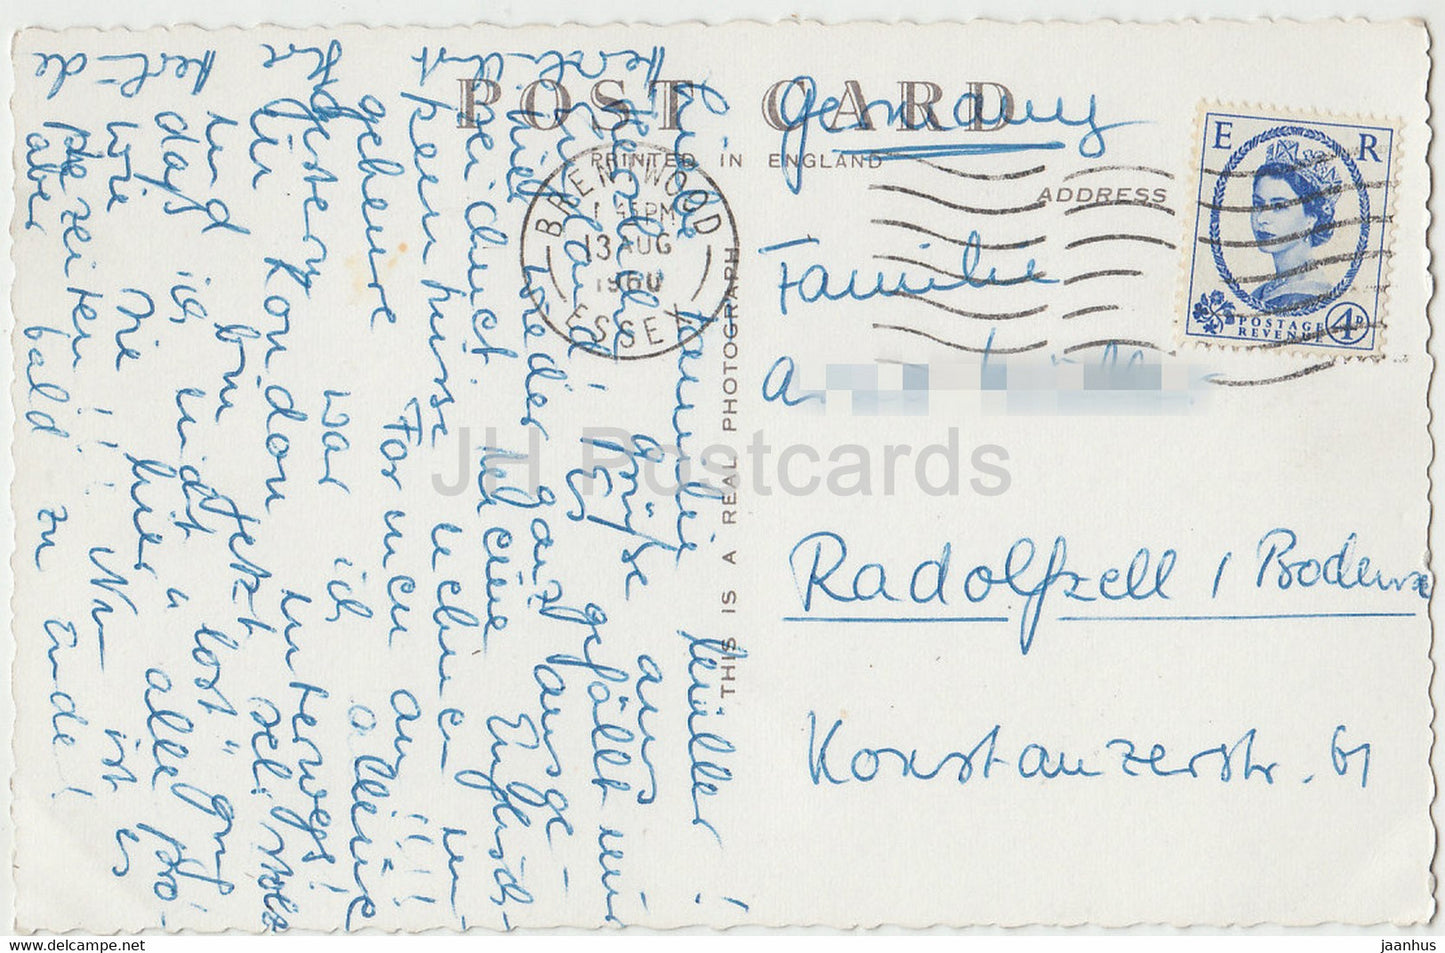 London - St Paul's Cathedral - 2 A - alte Postkarte - 1960 - Vereinigtes Königreich - England - gebraucht